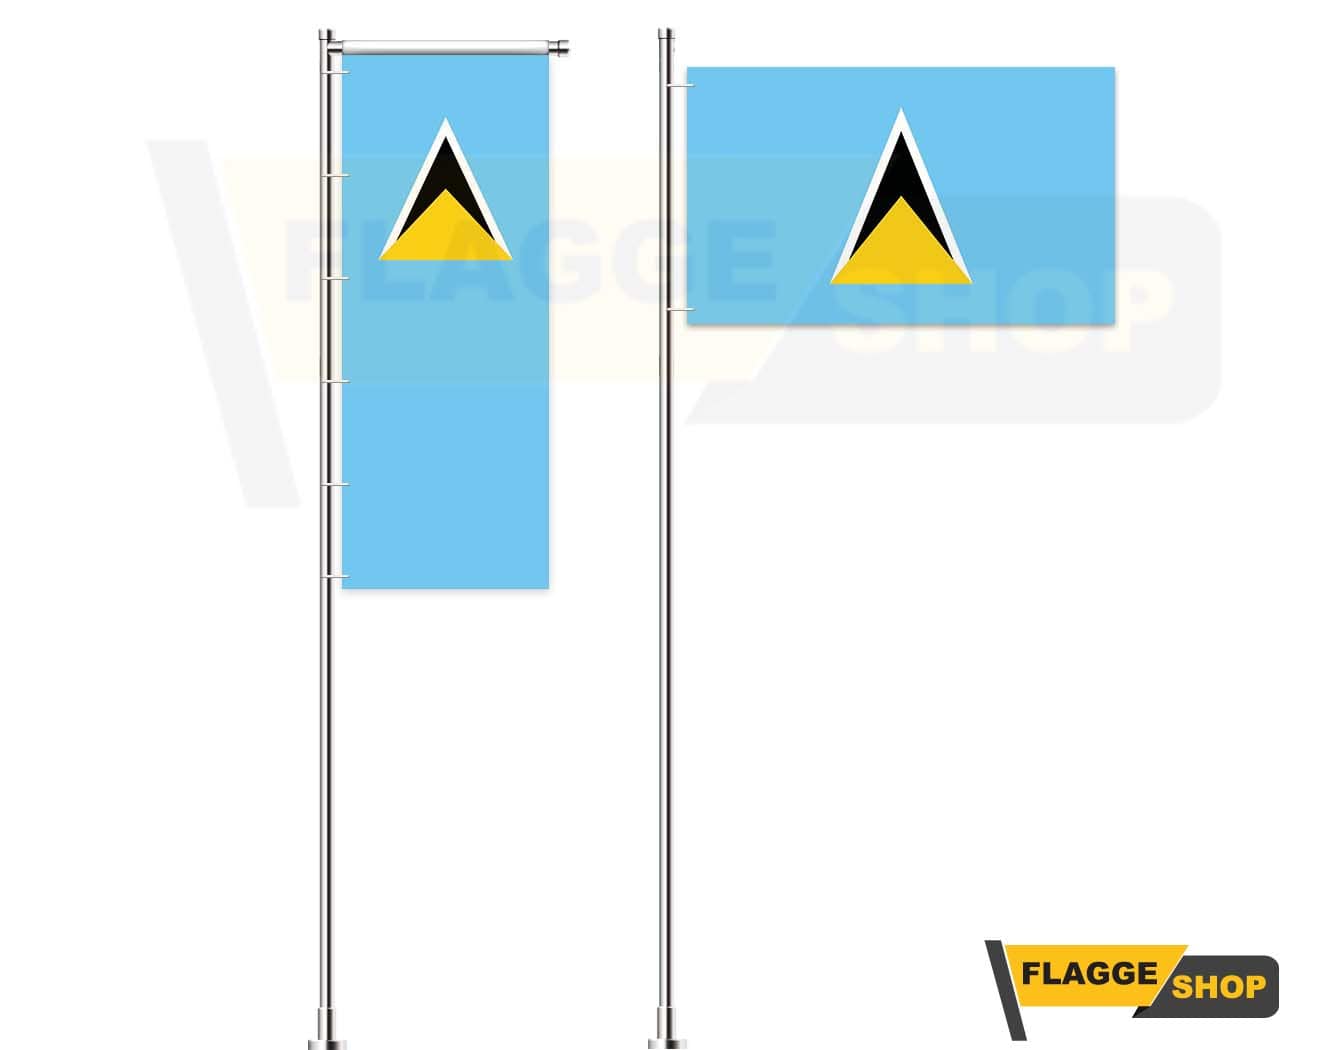 Saint Lucia-Flagge online günstig kaufen - Premium Qualität